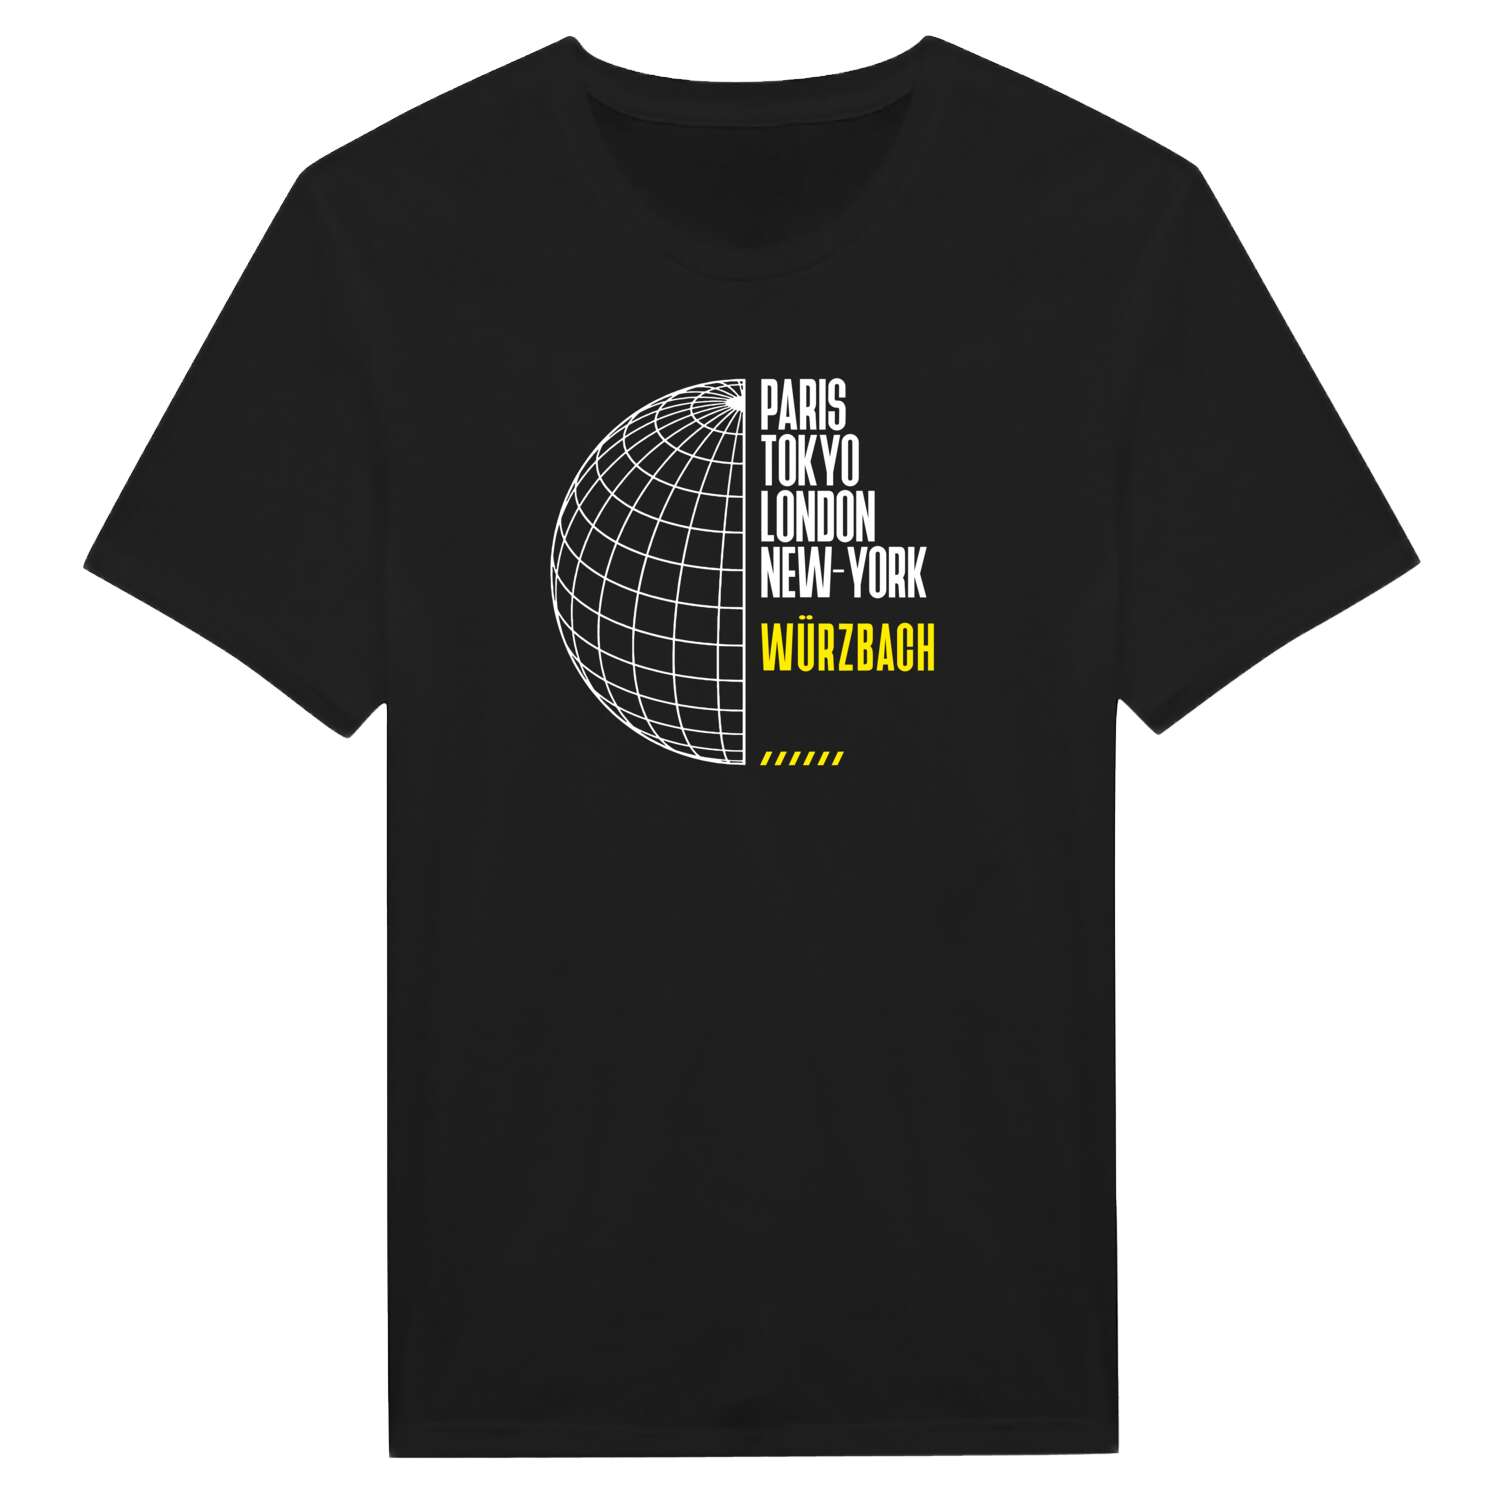 Würzbach T-Shirt »Paris Tokyo London«